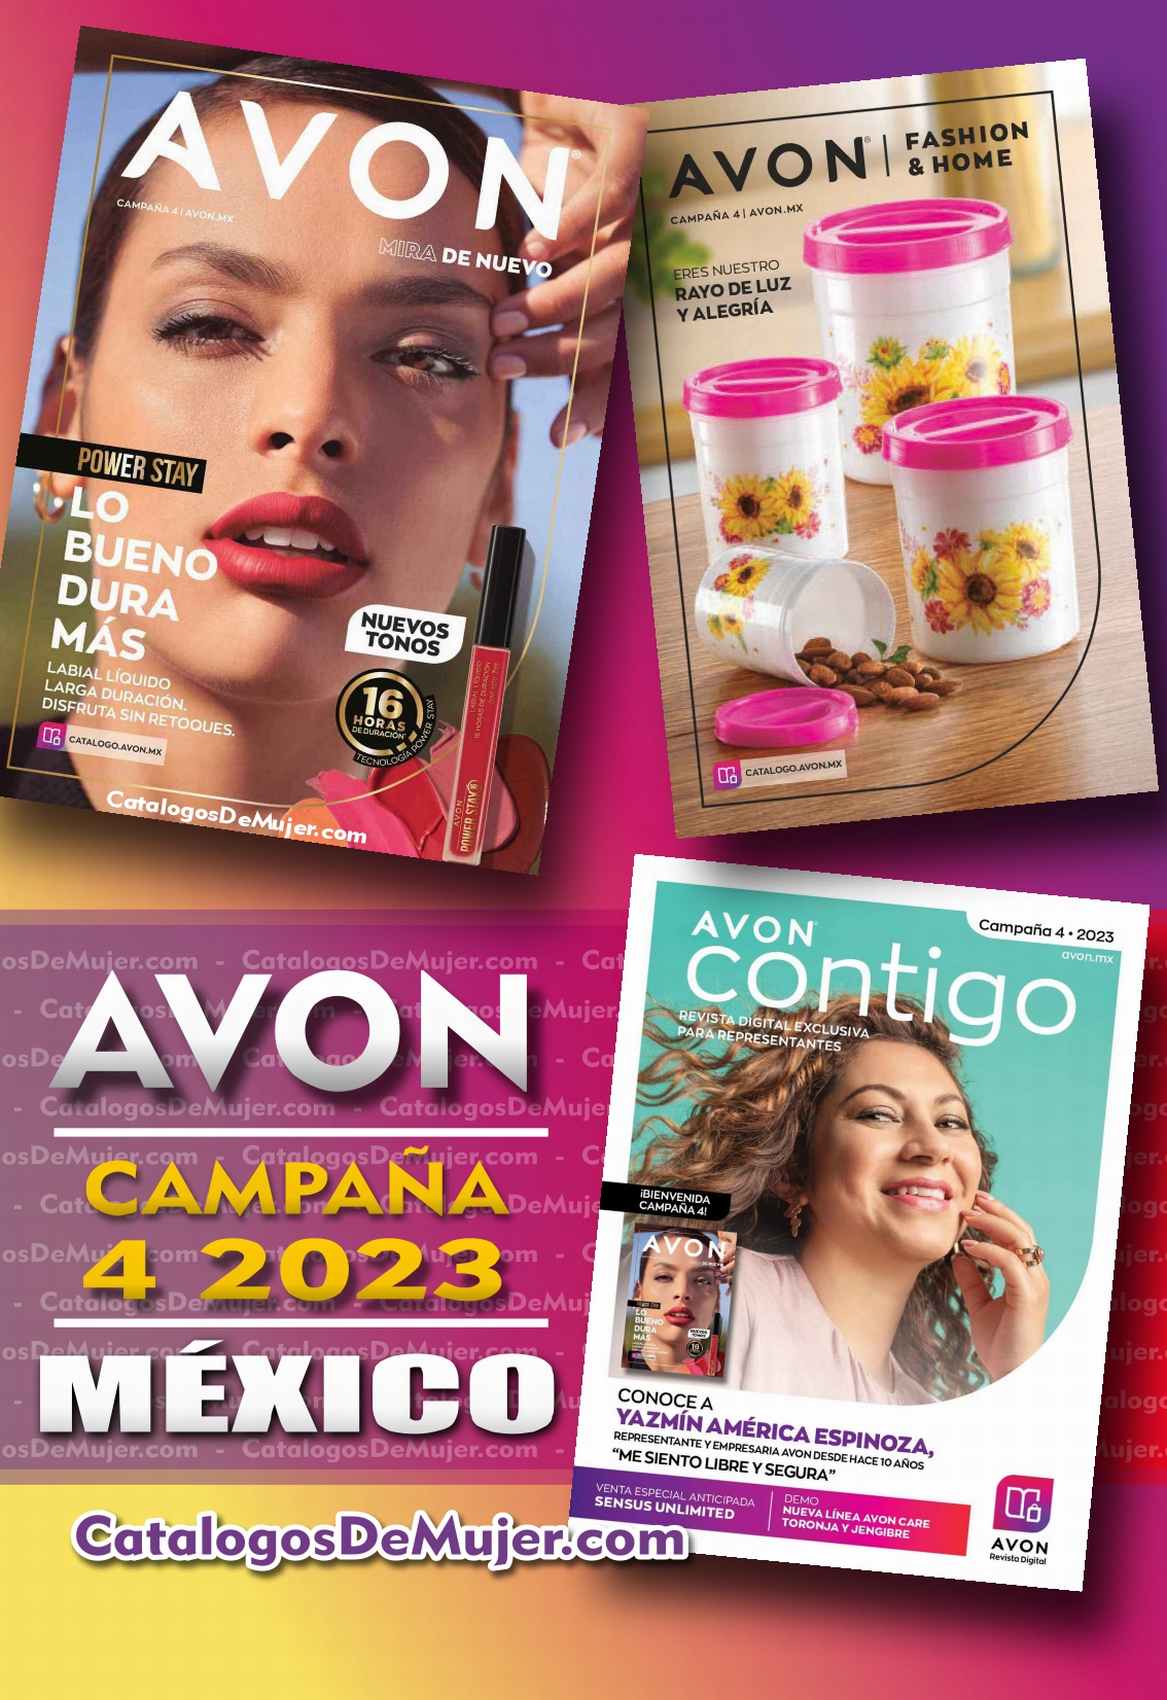 catalogo avon contigo campaña 4 2023 mexico archivos ⋆ Catálogos de Mujer